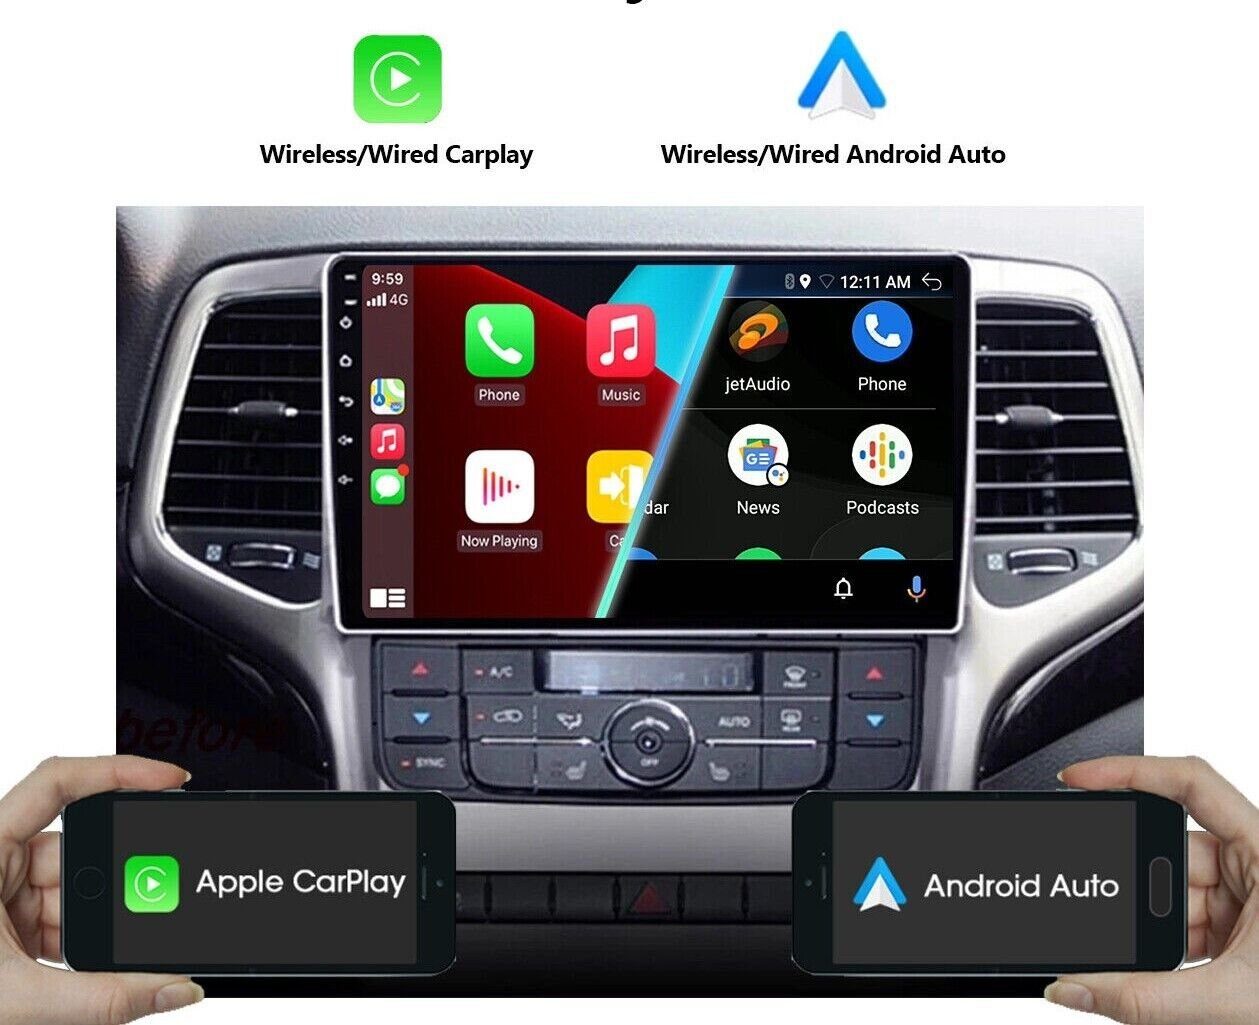 Jeep BT Für Android Cherokee Carplay 2008-2013 Grand FM Einbau-Navigationsgerät Autoradio 9" GABITECH